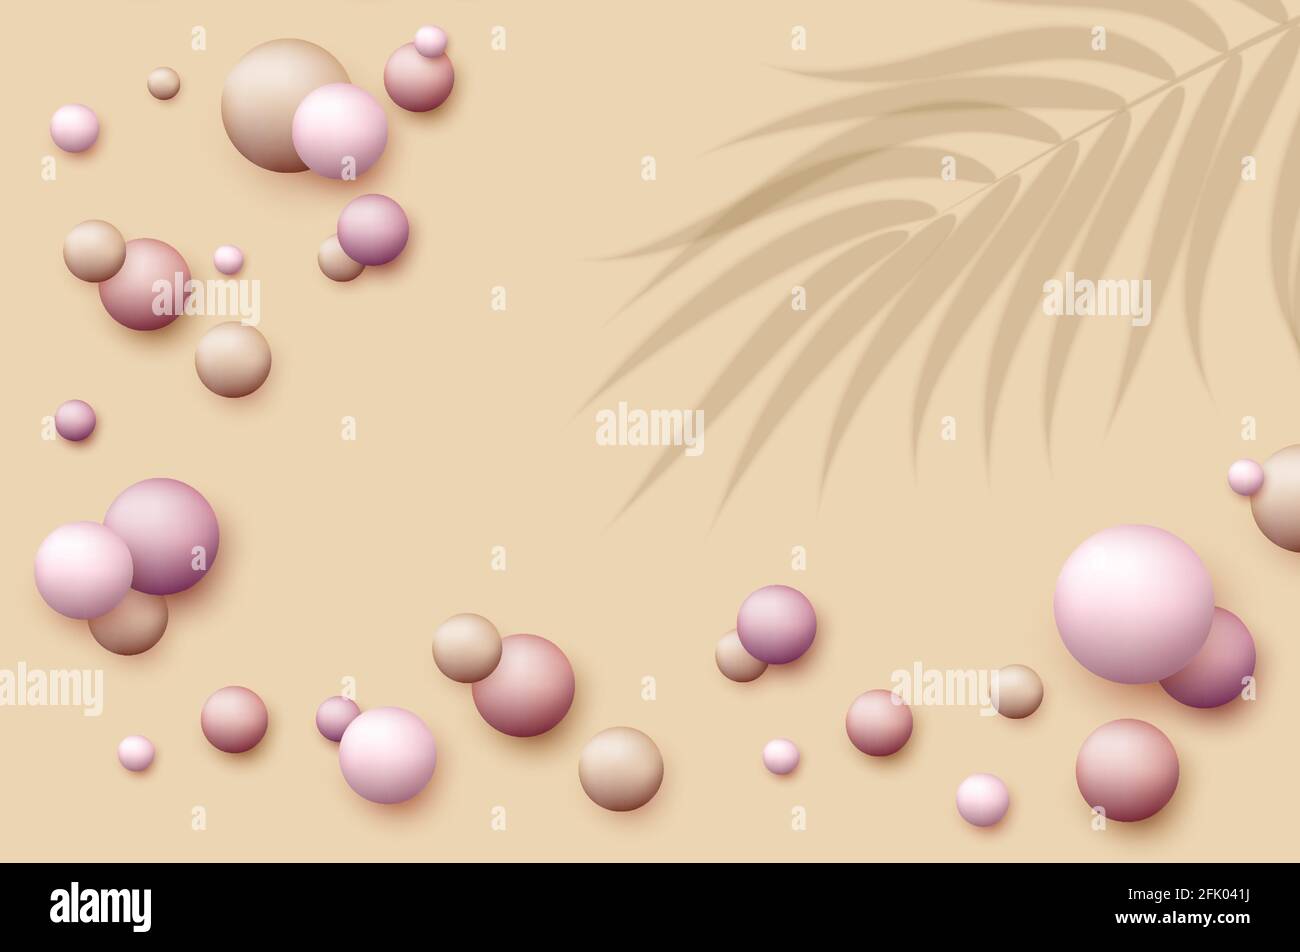 Vektor dynamischen Hintergrund mit bunten realistischen 3d-Kugeln. Runde Kugel in Perlen Pastellfarben mit überlagerter Handfläche hinterlässt Schatten. Puderbälle Stock Vektor